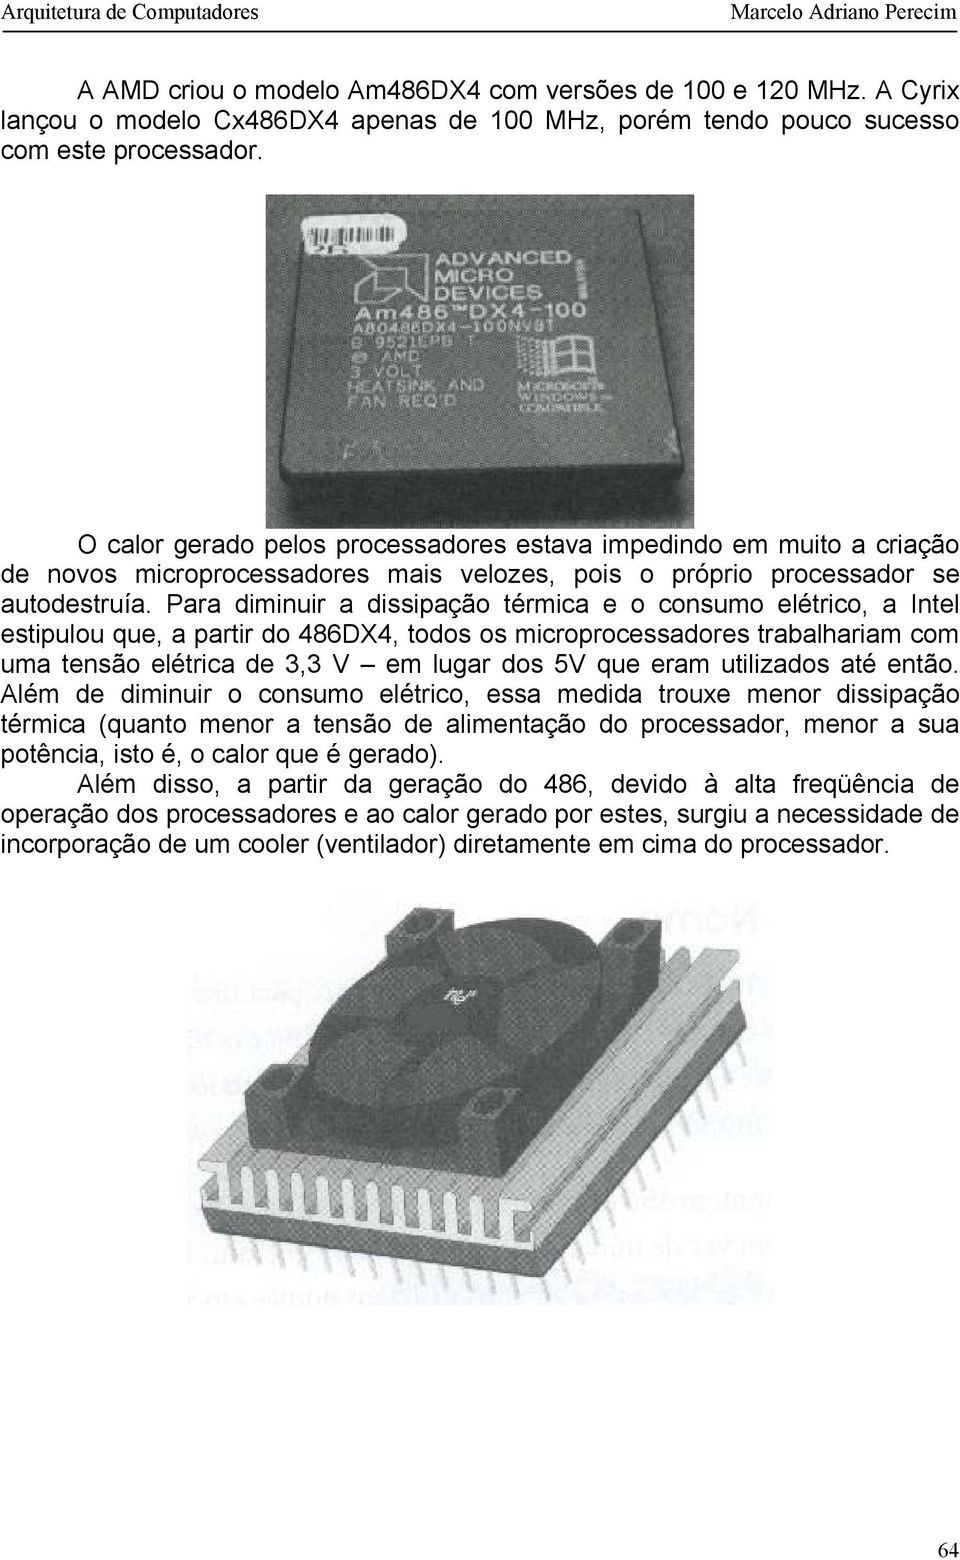 Para diminuir a dissipação térmica e o consumo elétrico, a Intel estipulou que, a partir do 486DX4, todos os microprocessadores trabalhariam com uma tensão elétrica de 3,3 V em lugar dos 5V que eram